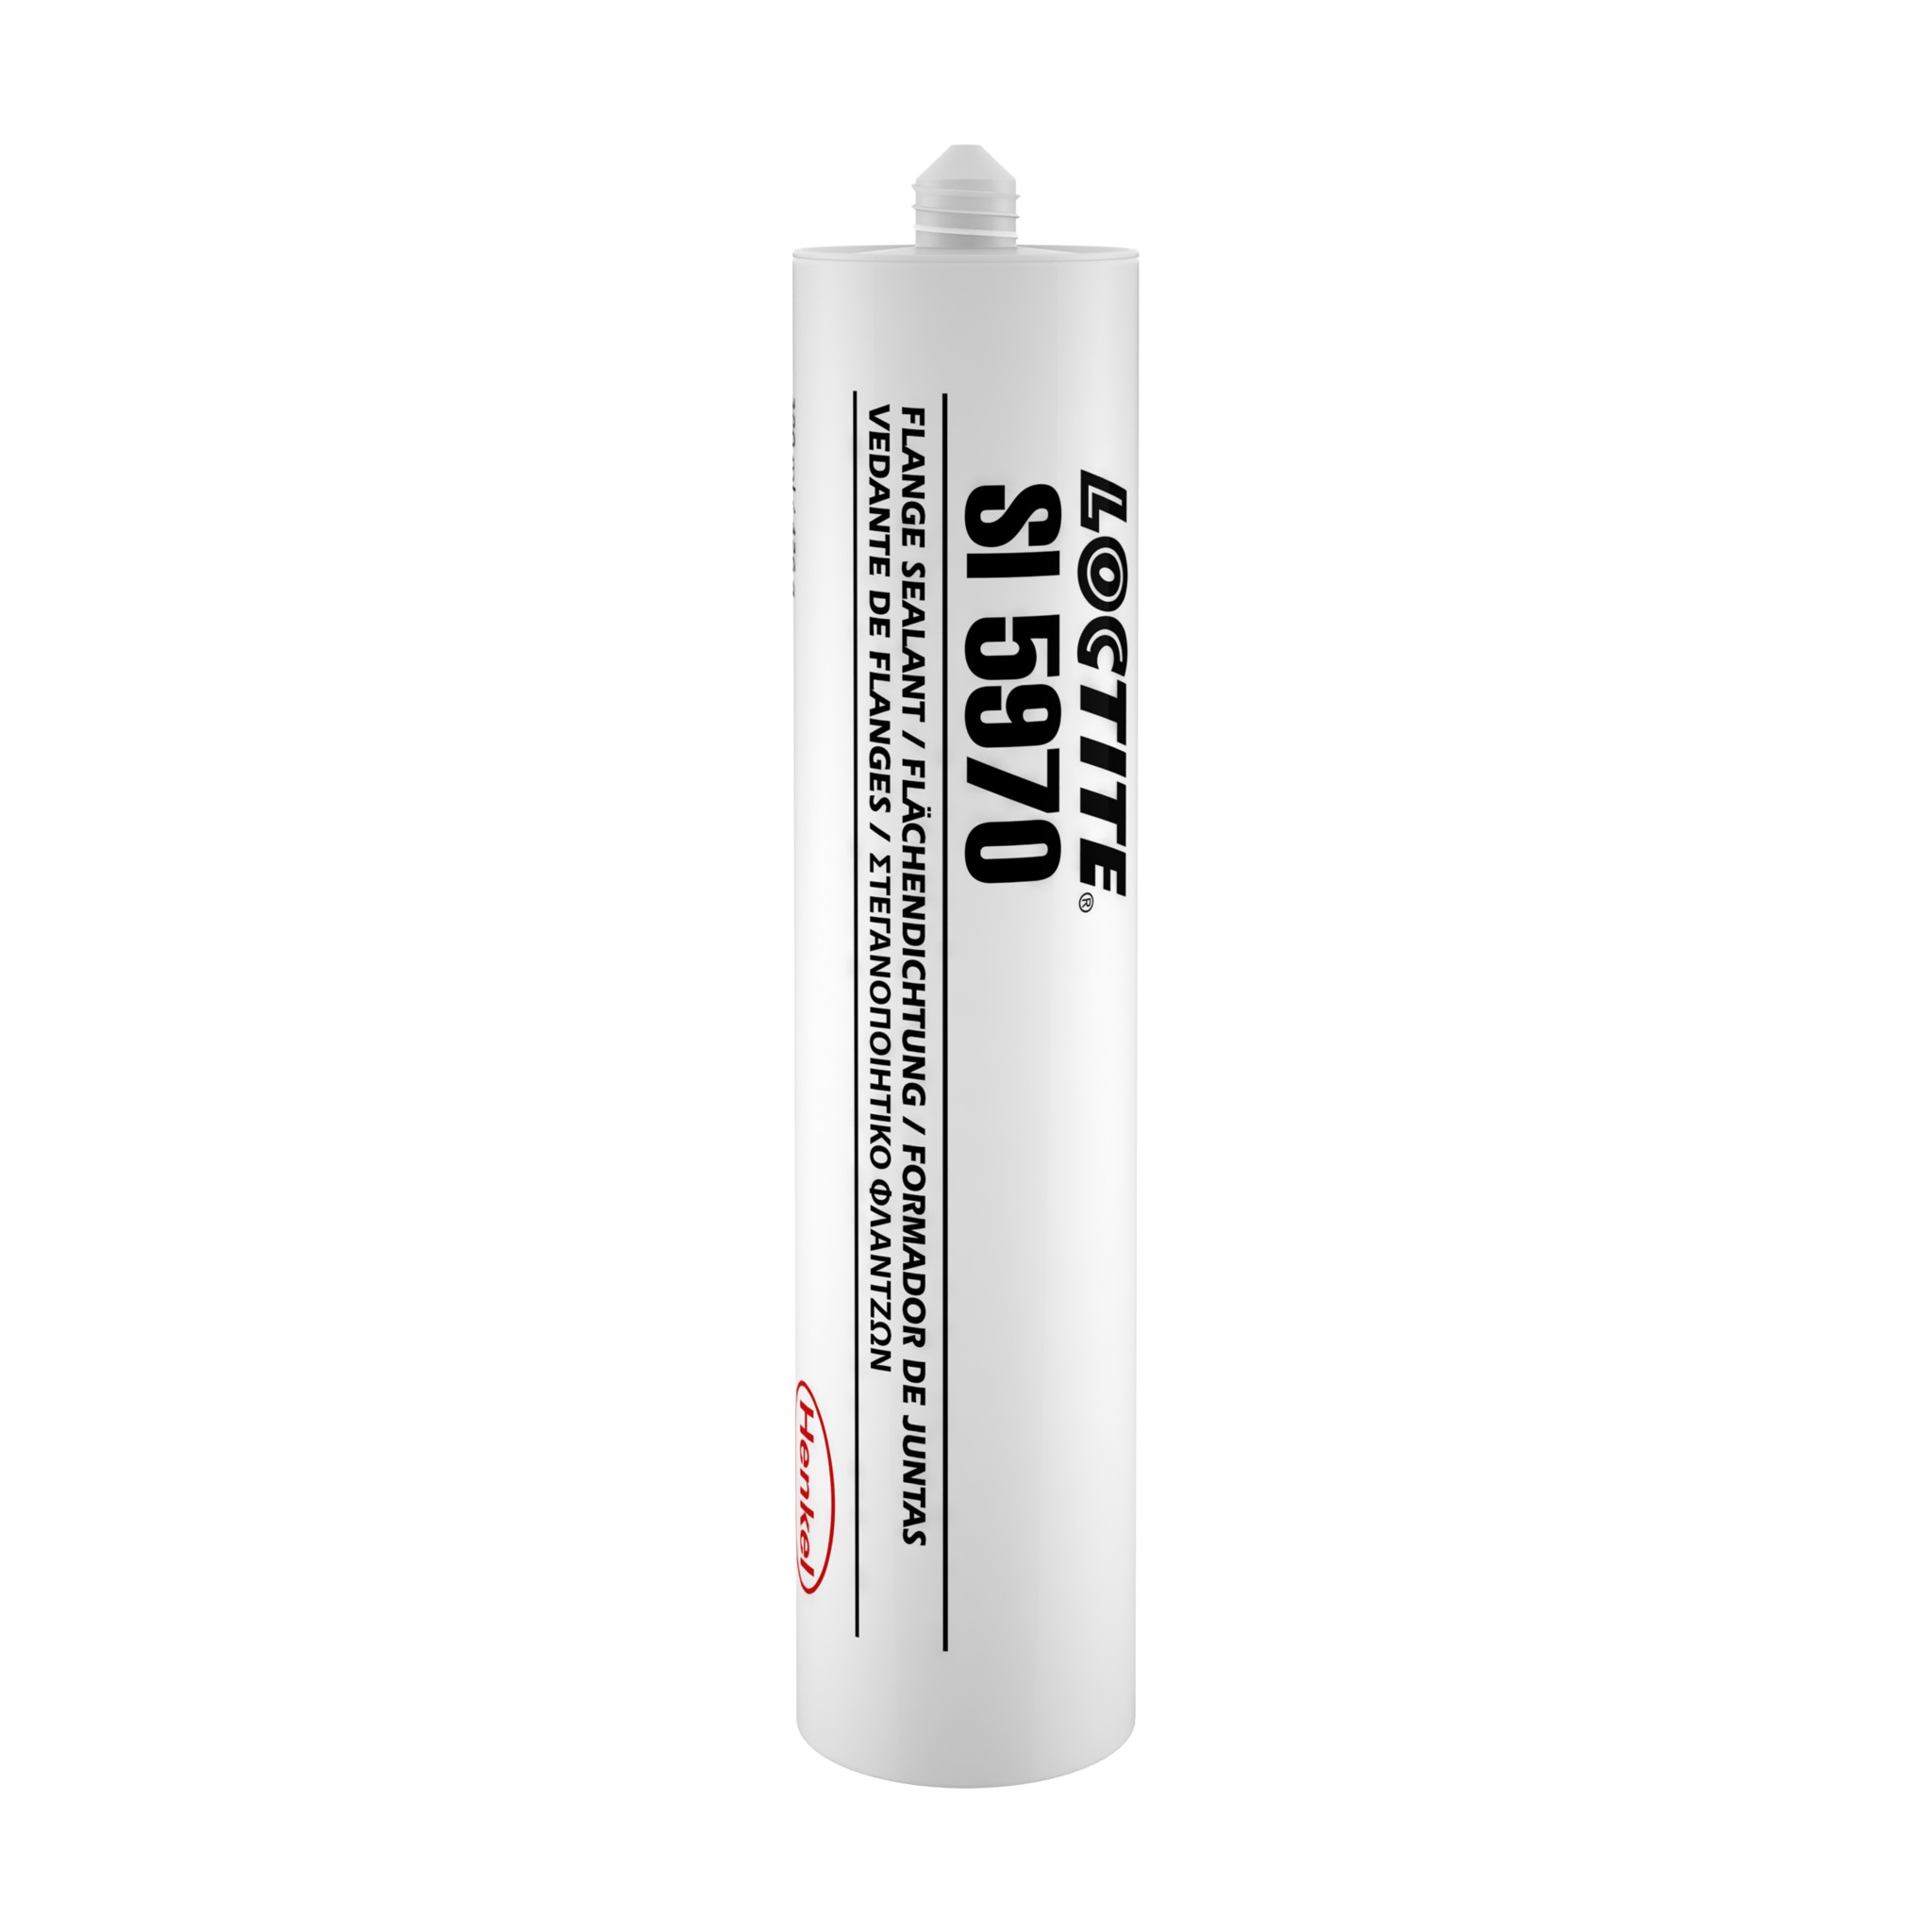 SI - Gasketing product - Henkel